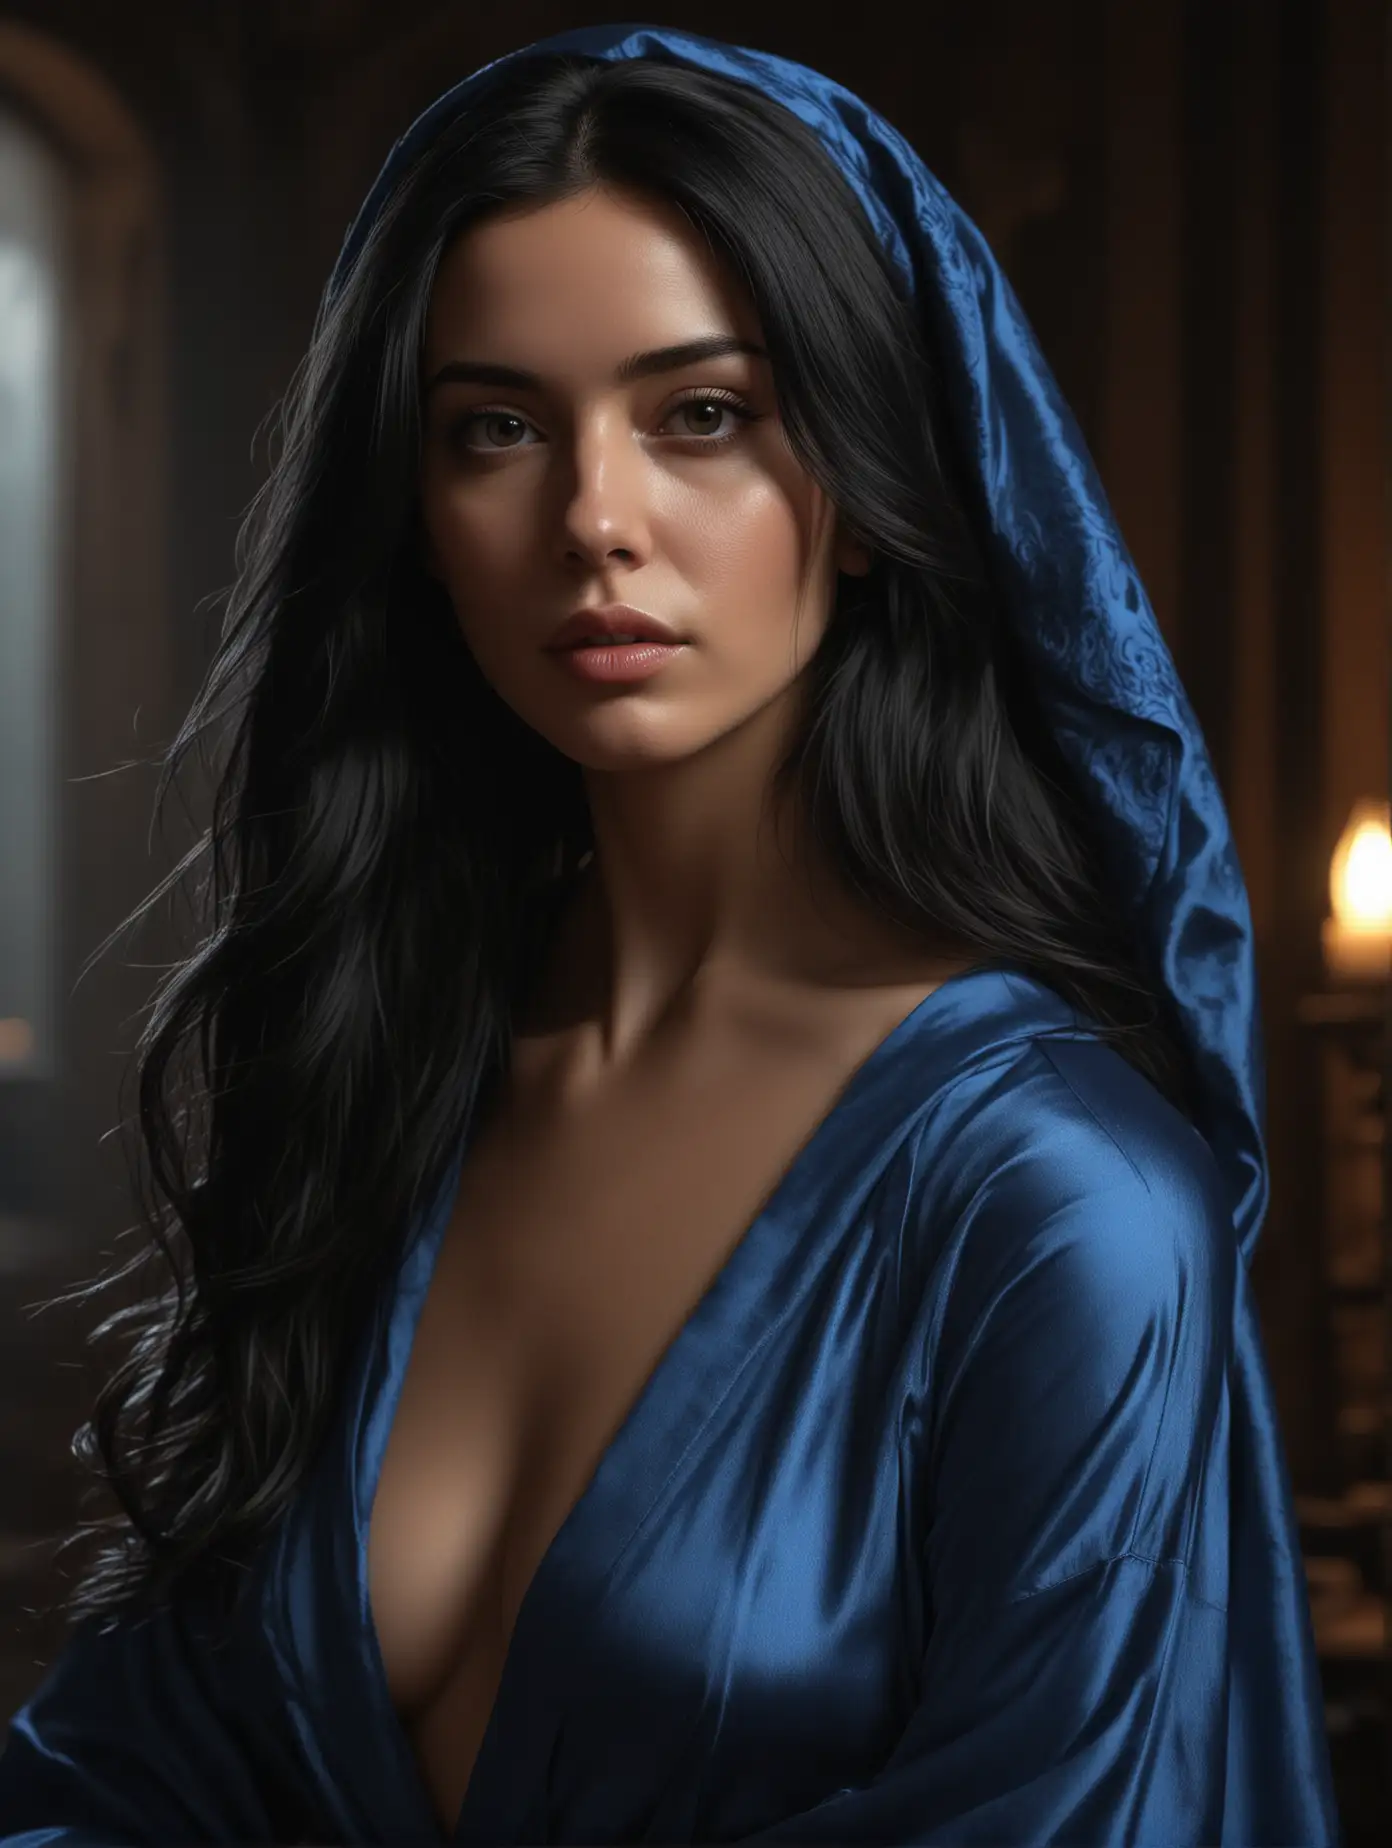 Exquisite Chiaroscuro Portrait of a Woman in Blue Robe by Lucio Parrillo